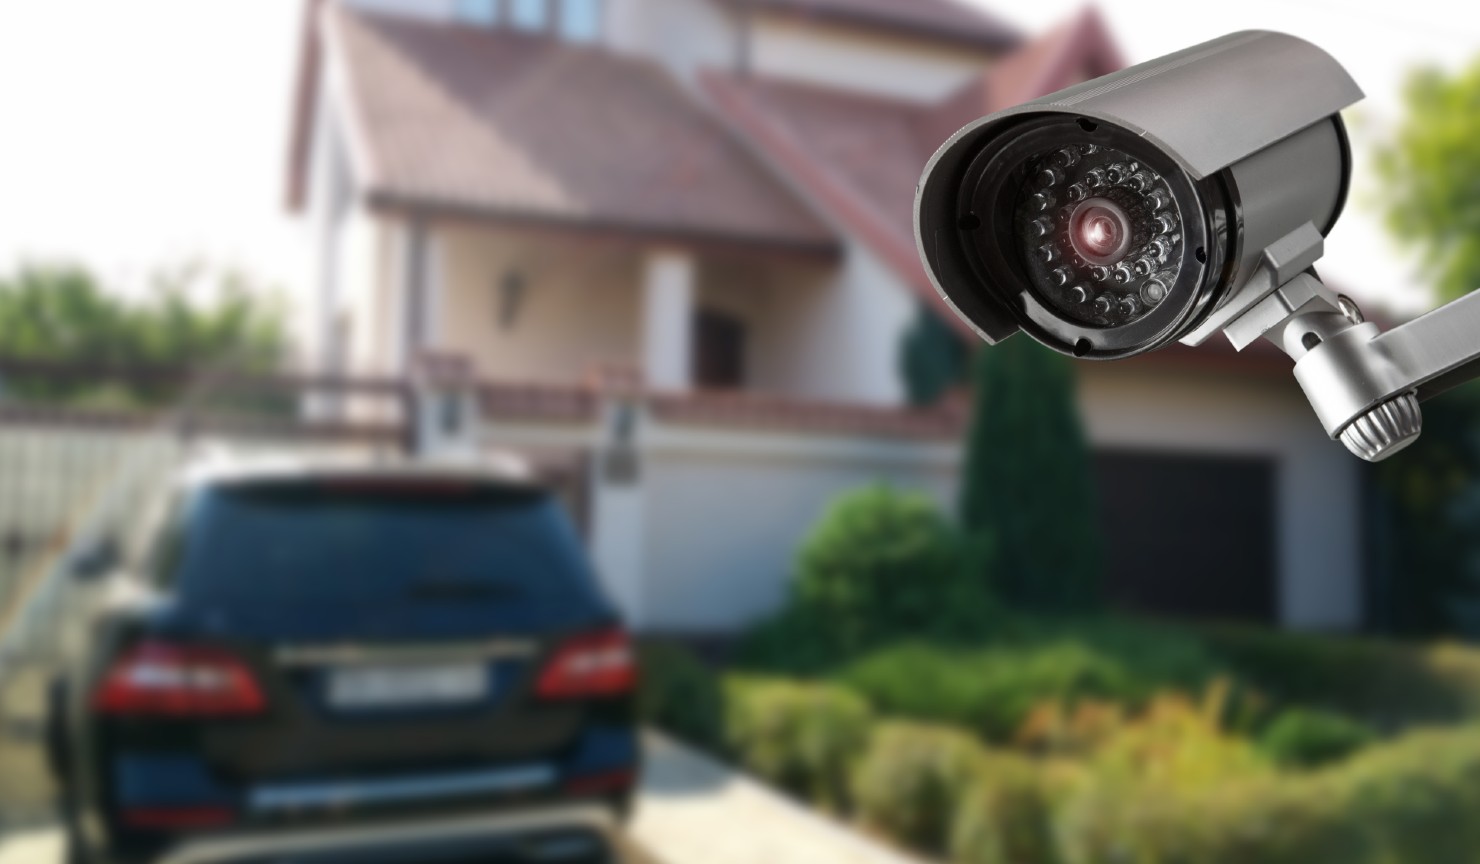 Cctv Home Security Cameras